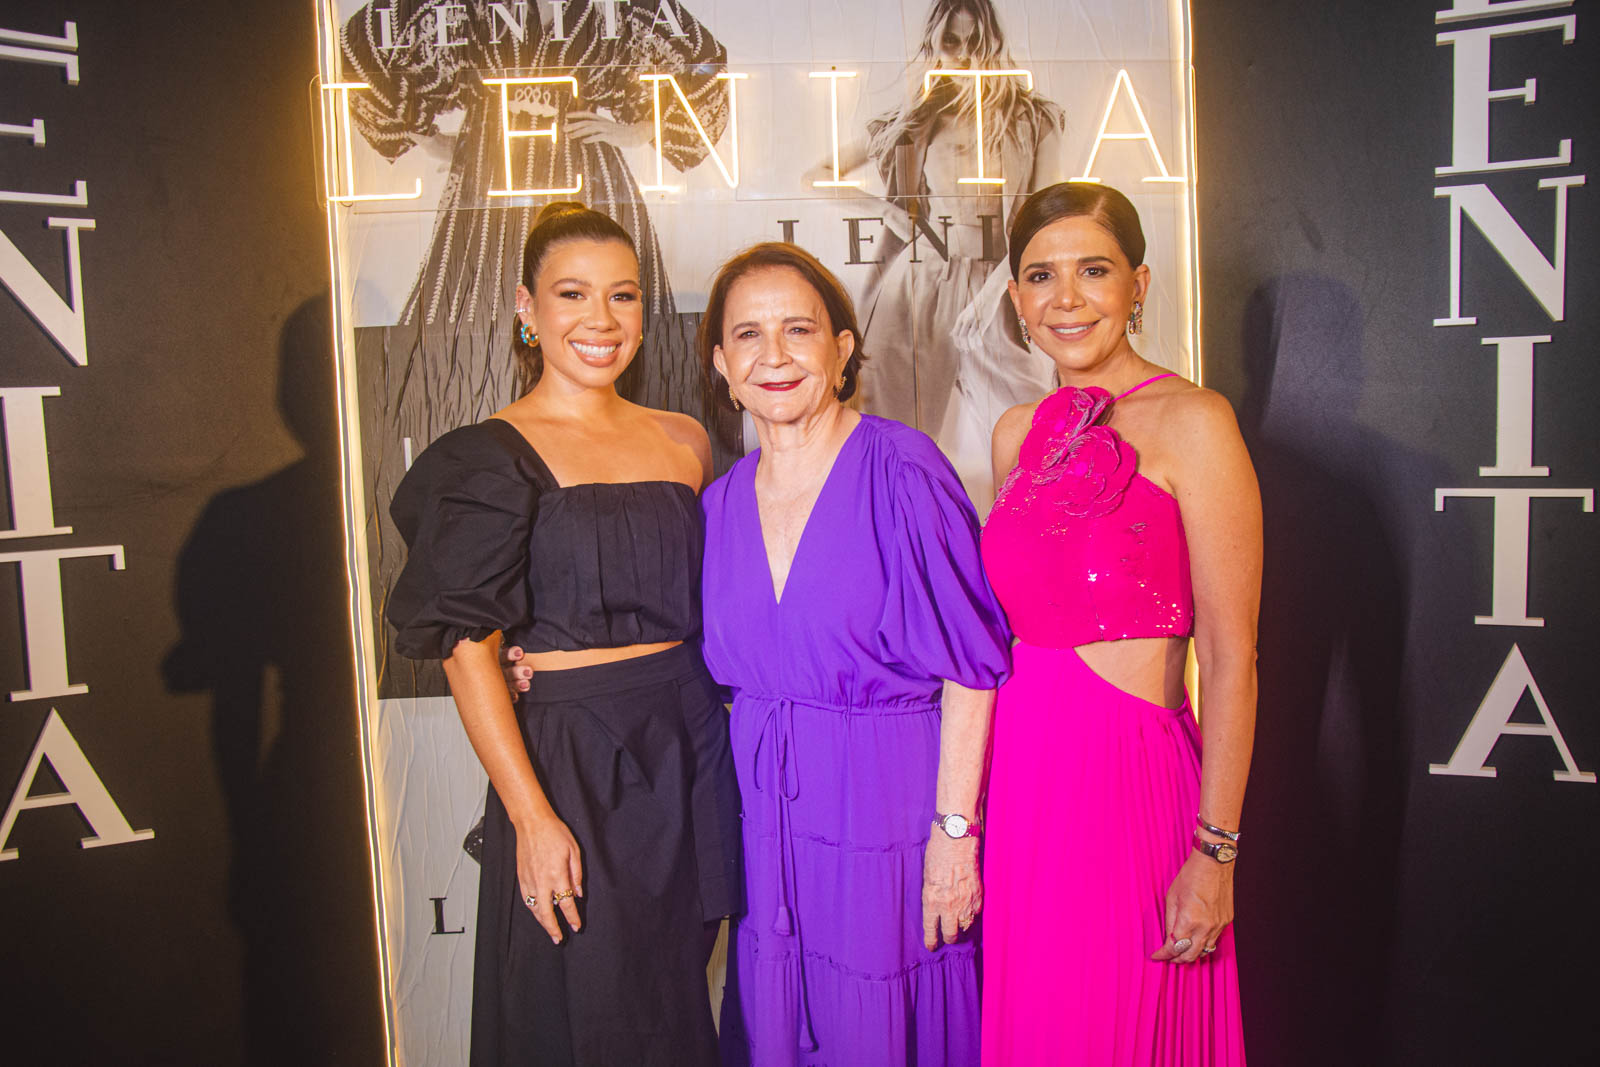 Lenita Fashion Show apresenta Coleção Festa ao som de Rafa e Pipo no Iate Clube